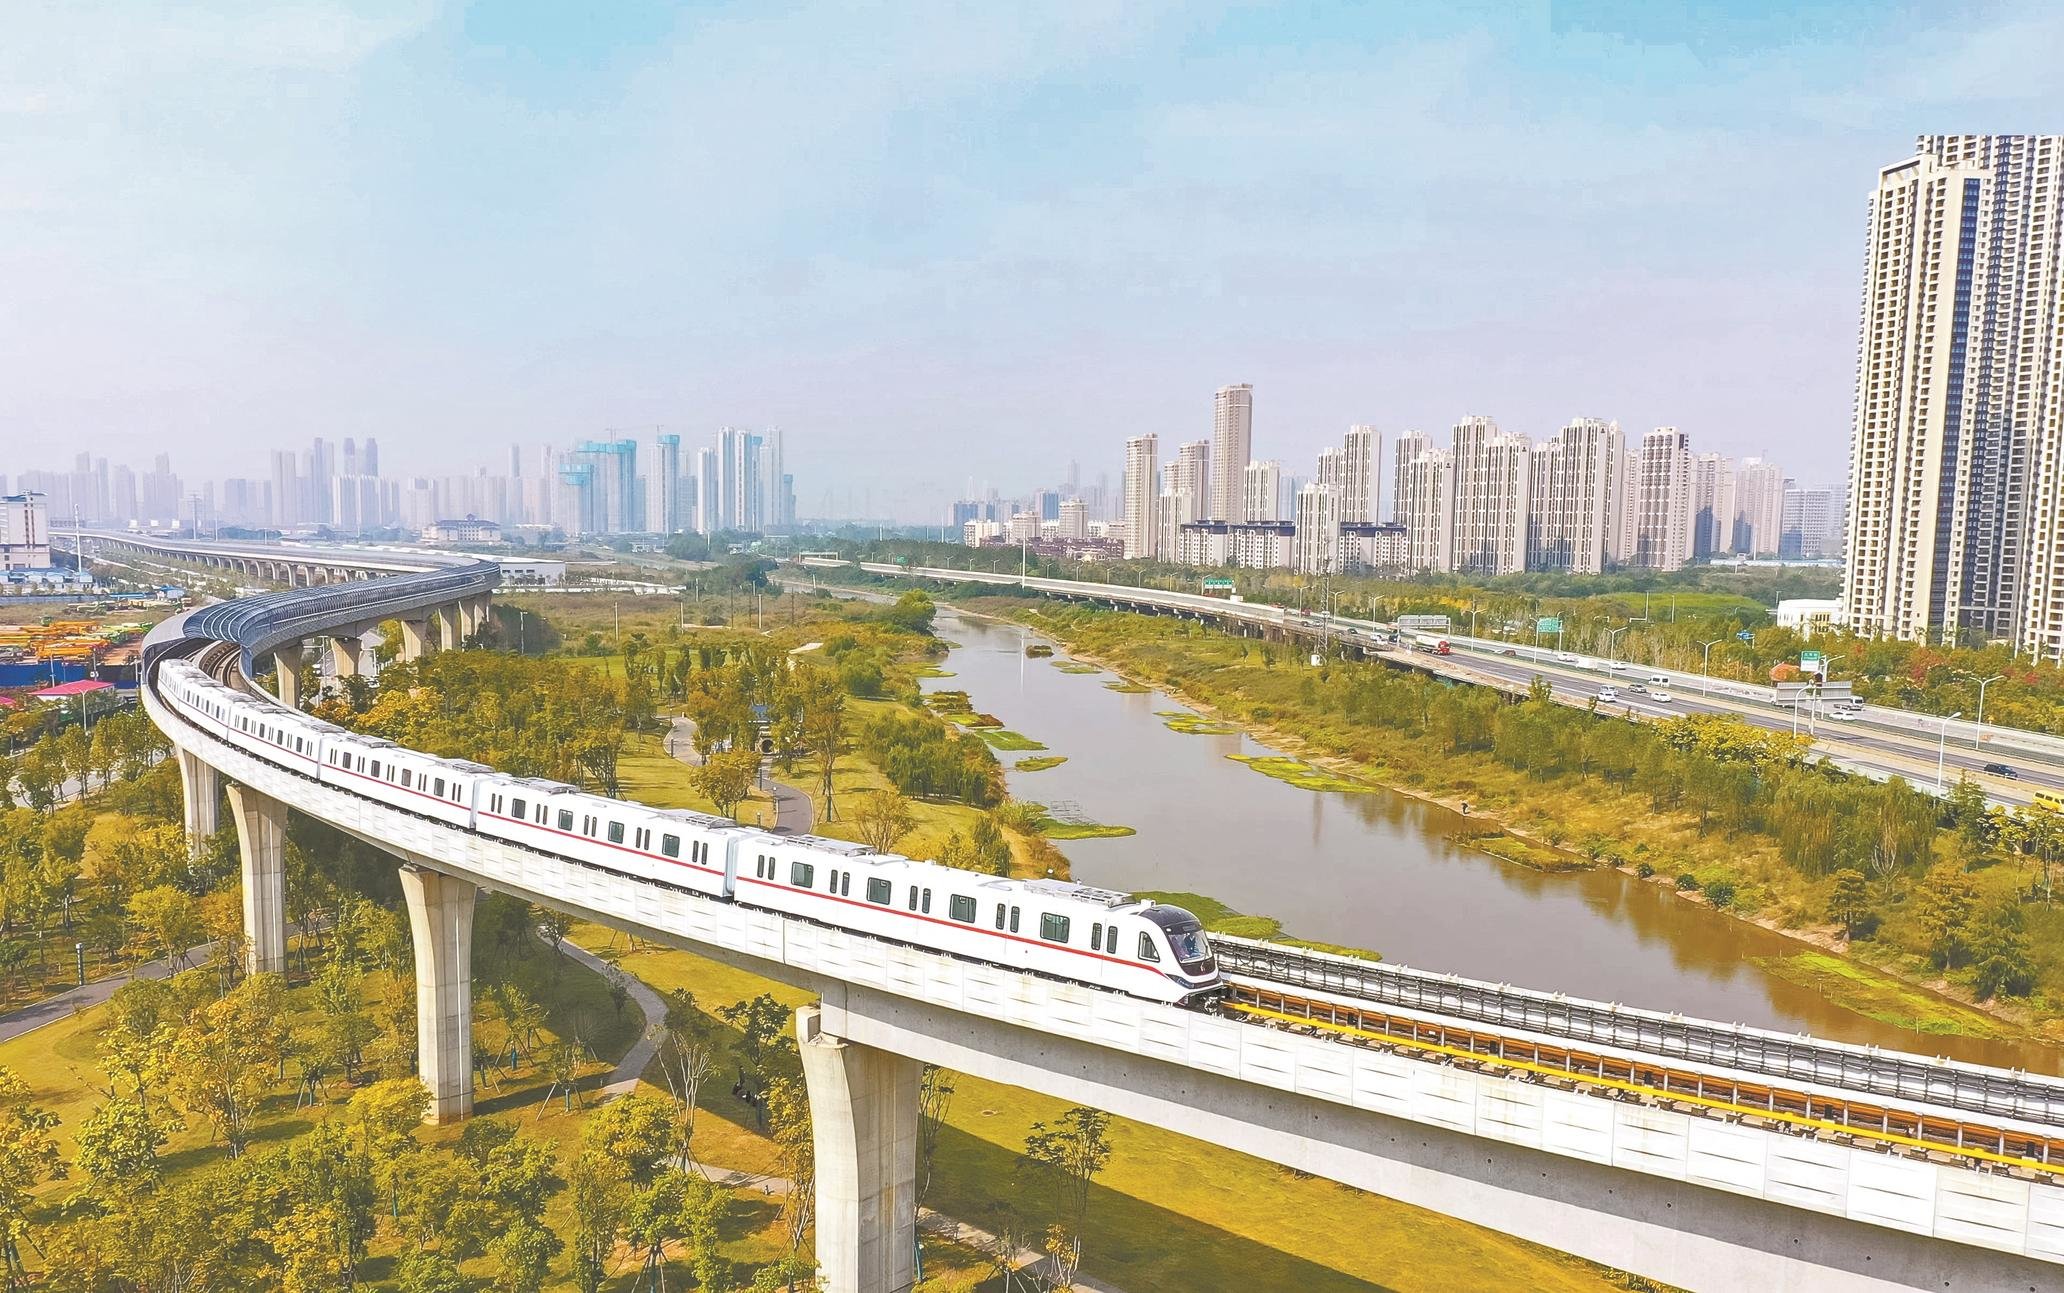 运营里程10年增加400余公里 武汉成为世界级地铁城市